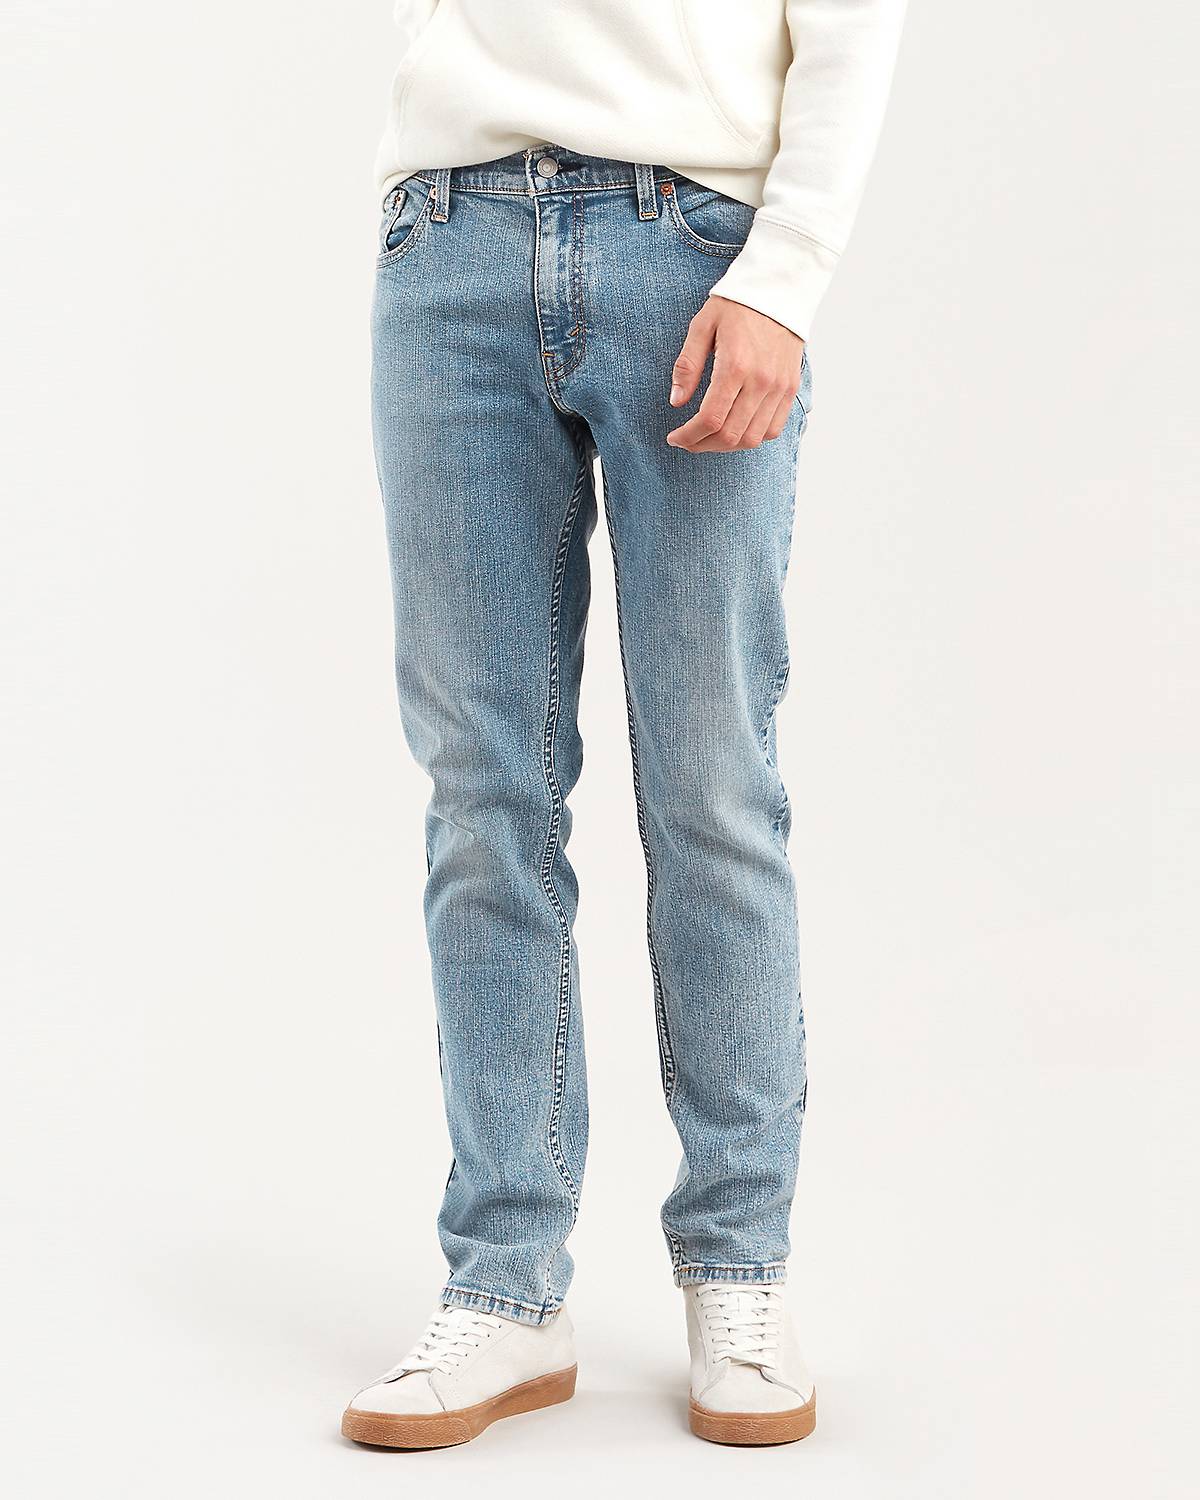 Levi's® 527 - Shop Slim Boot Cut Jeans for Men | Levi's® US